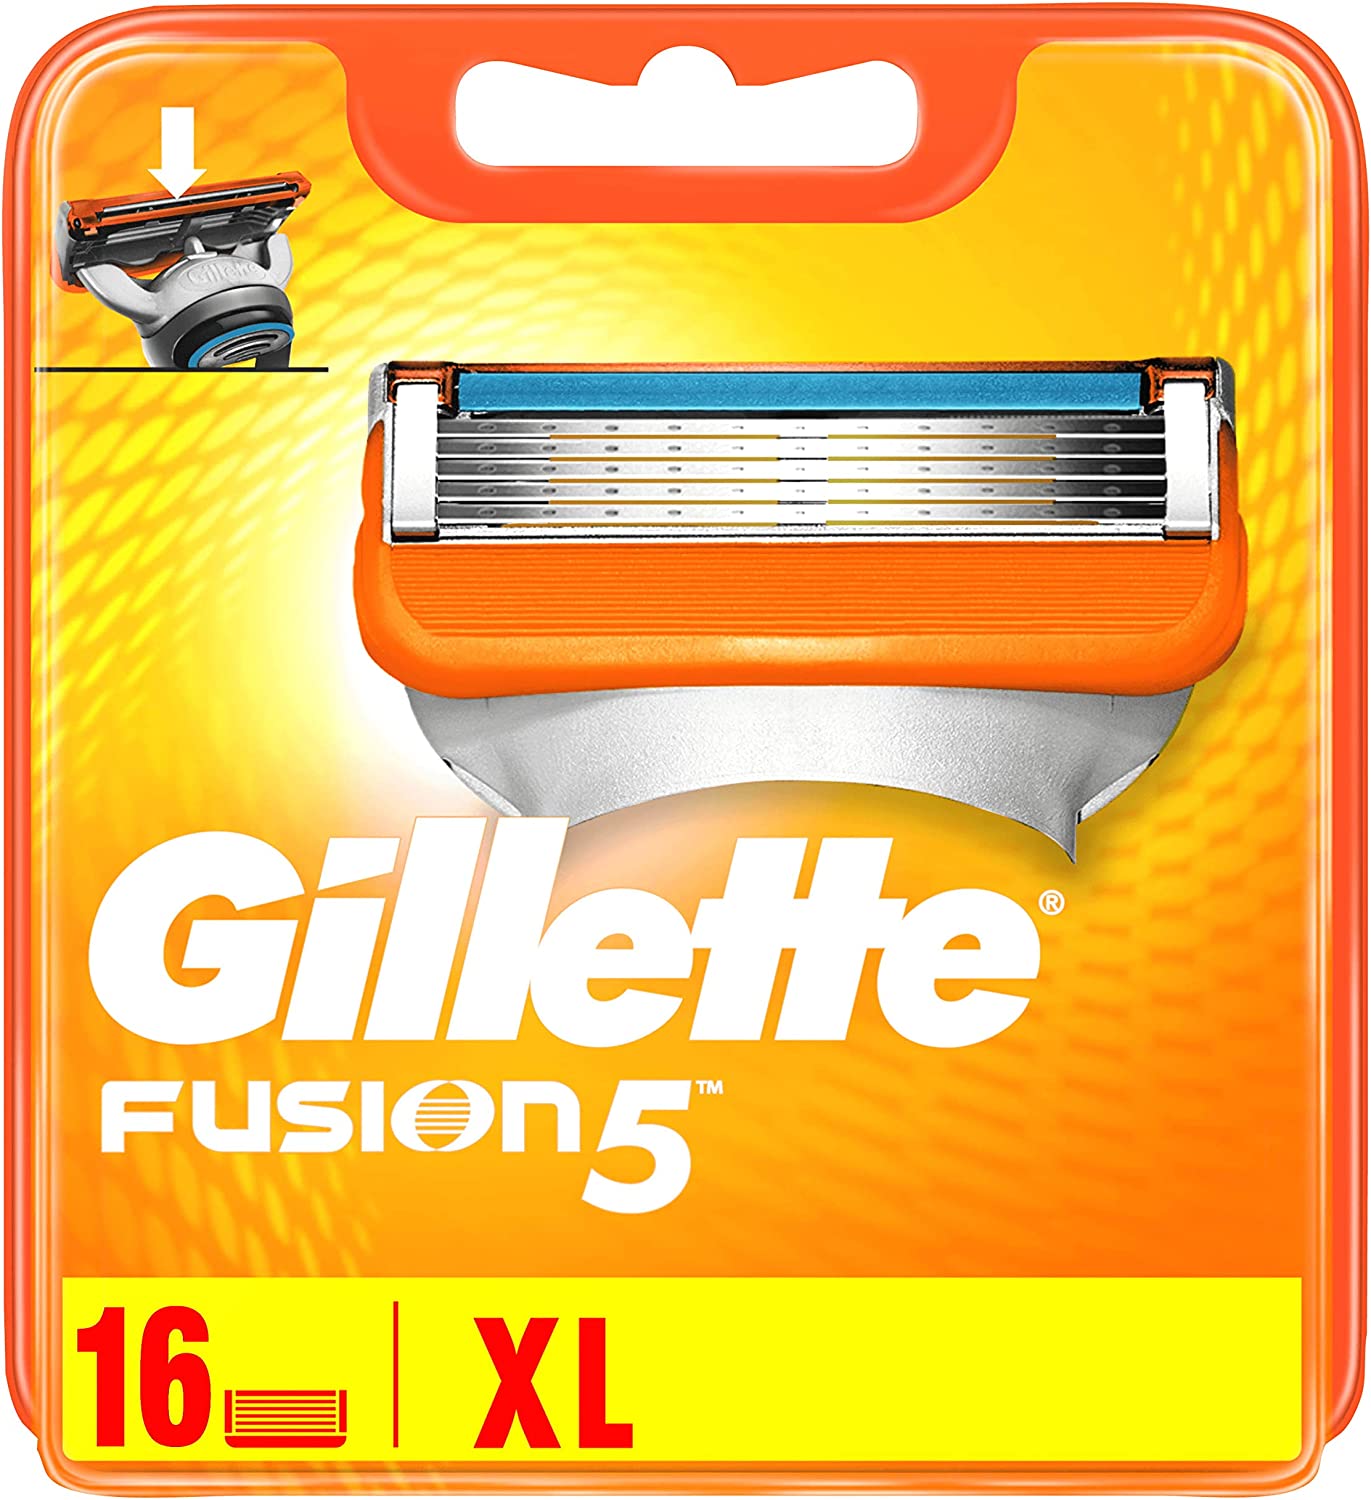 Gillette Fusion scheermesjes - 16 stuks